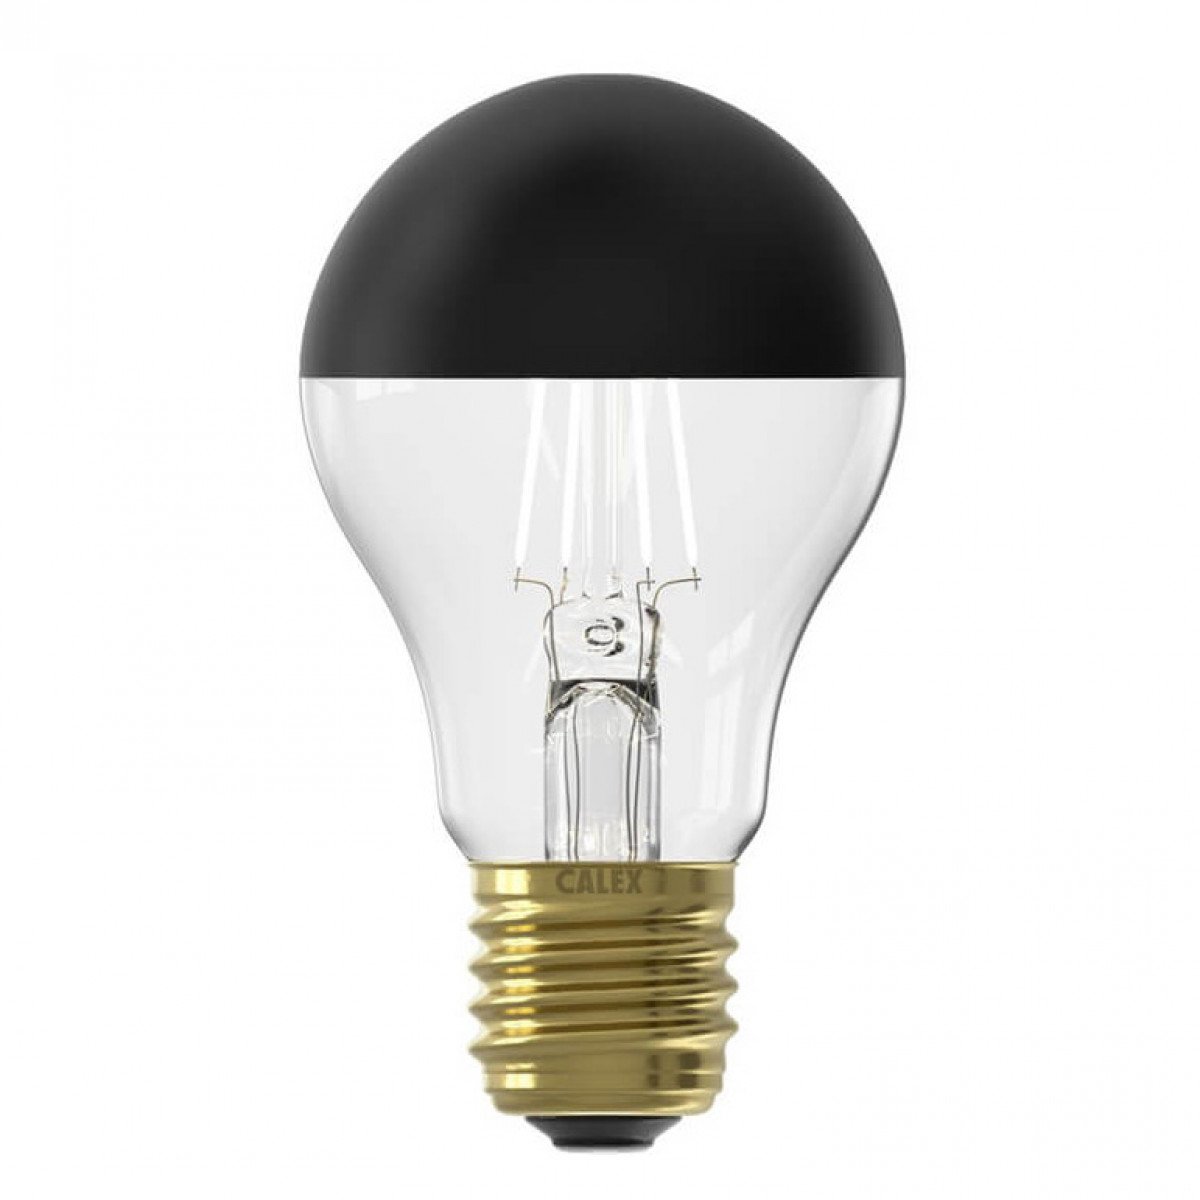 Leuchtmittel Calex LED schwarz E27 Fassung moderne Leuchte 4W